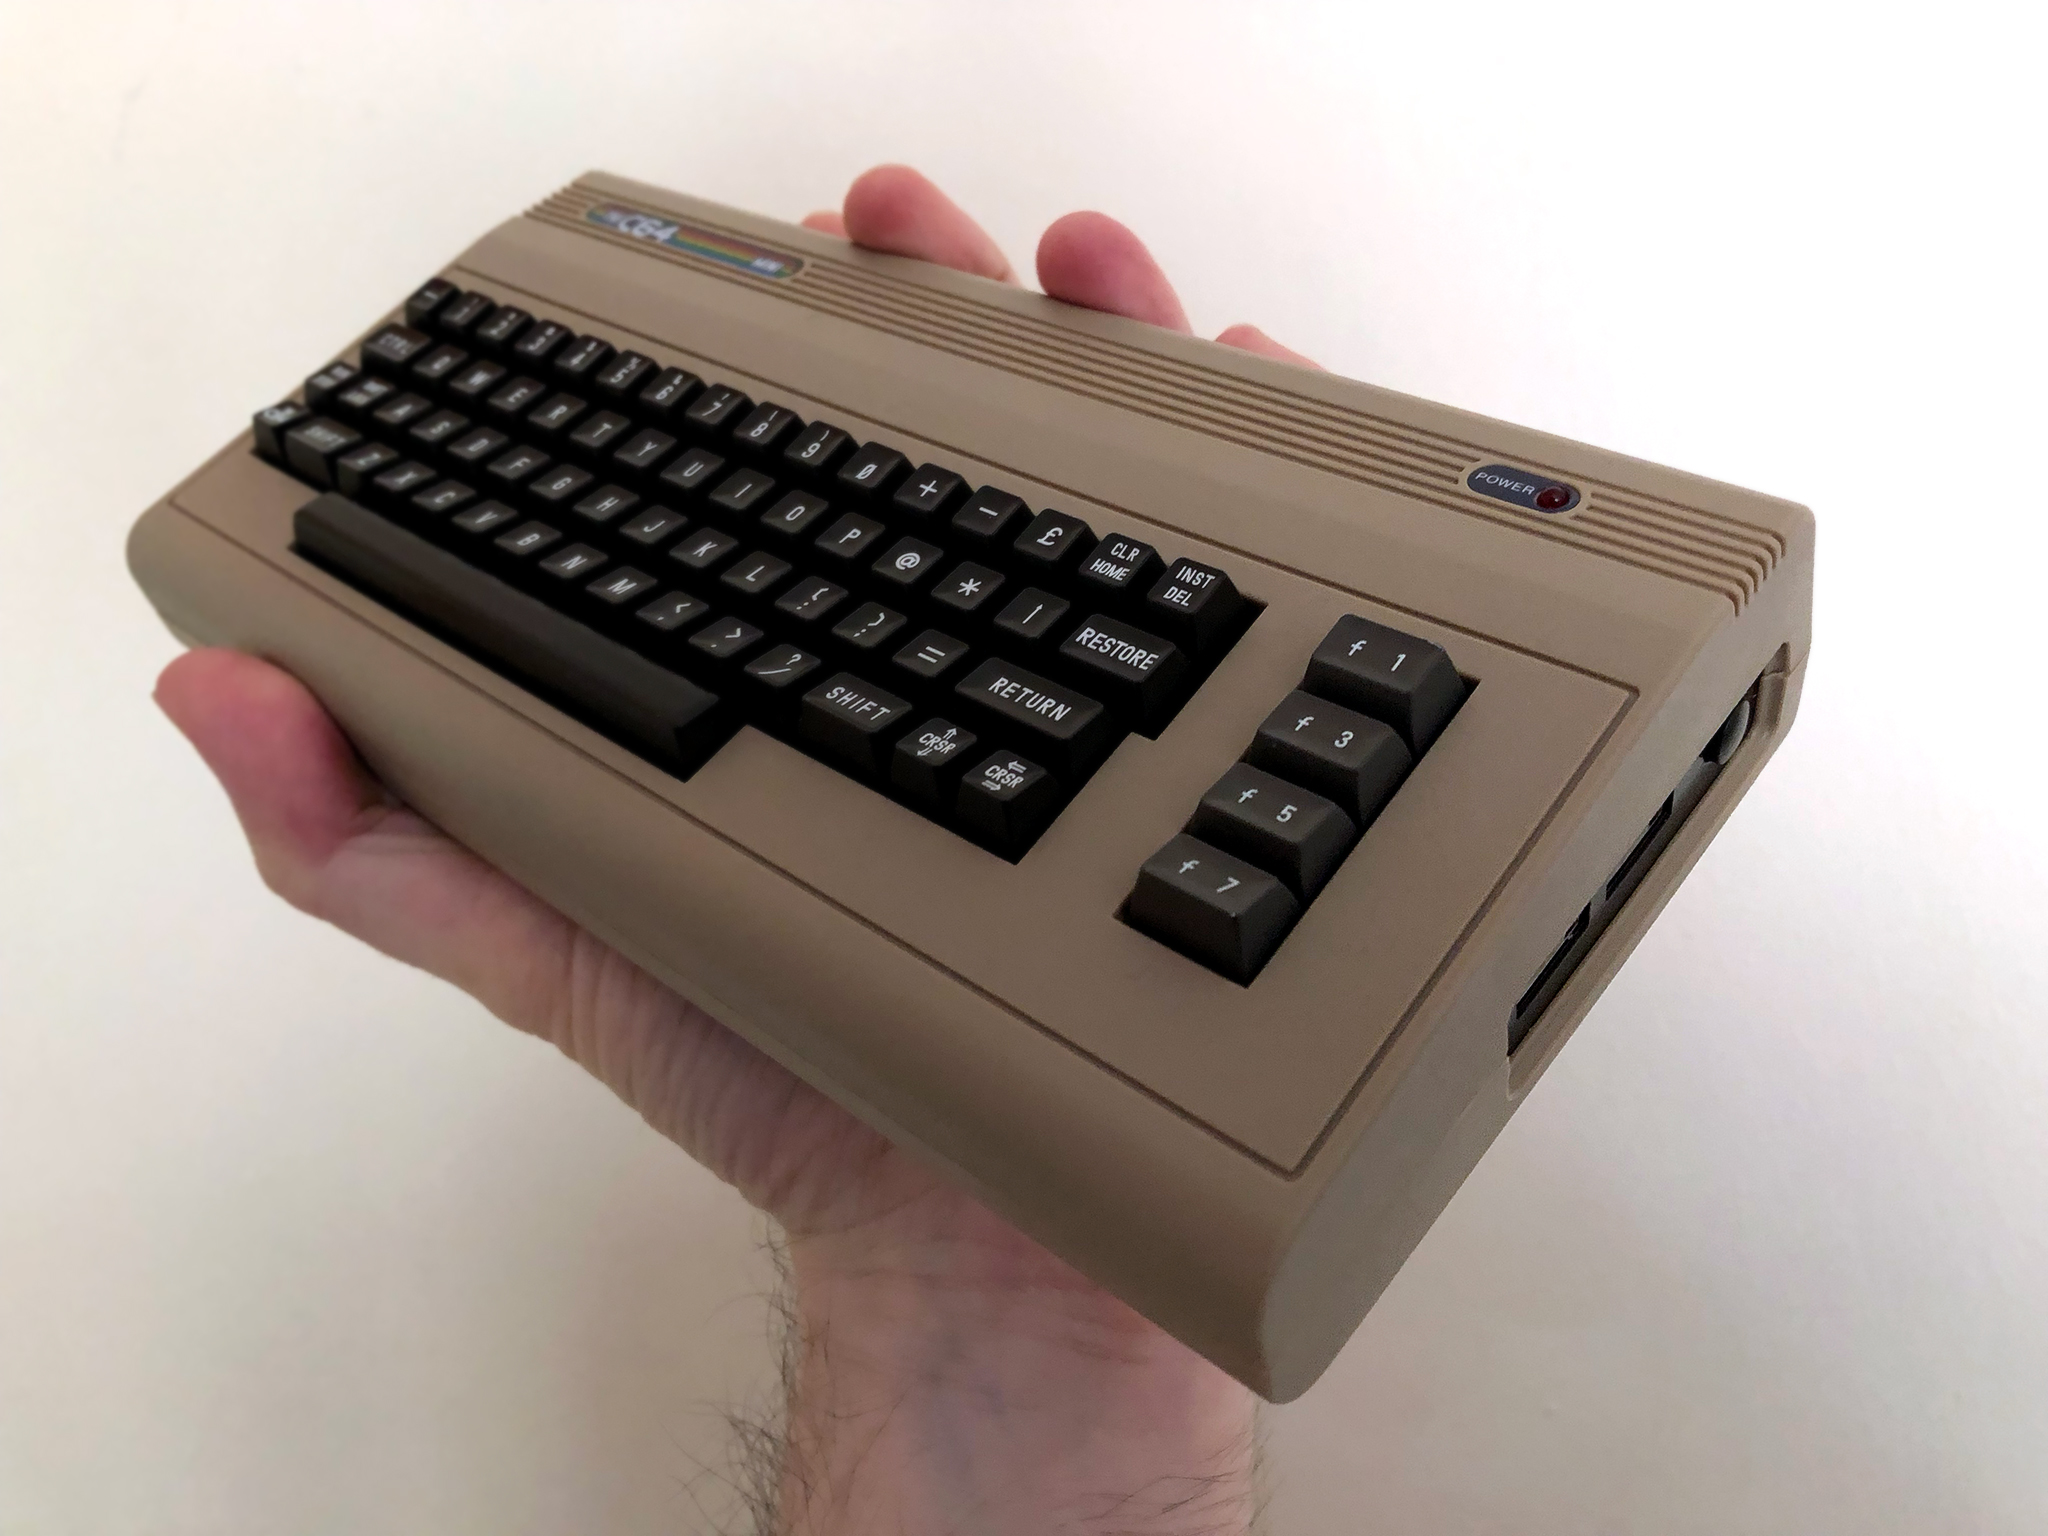 The C64 Mini verdict